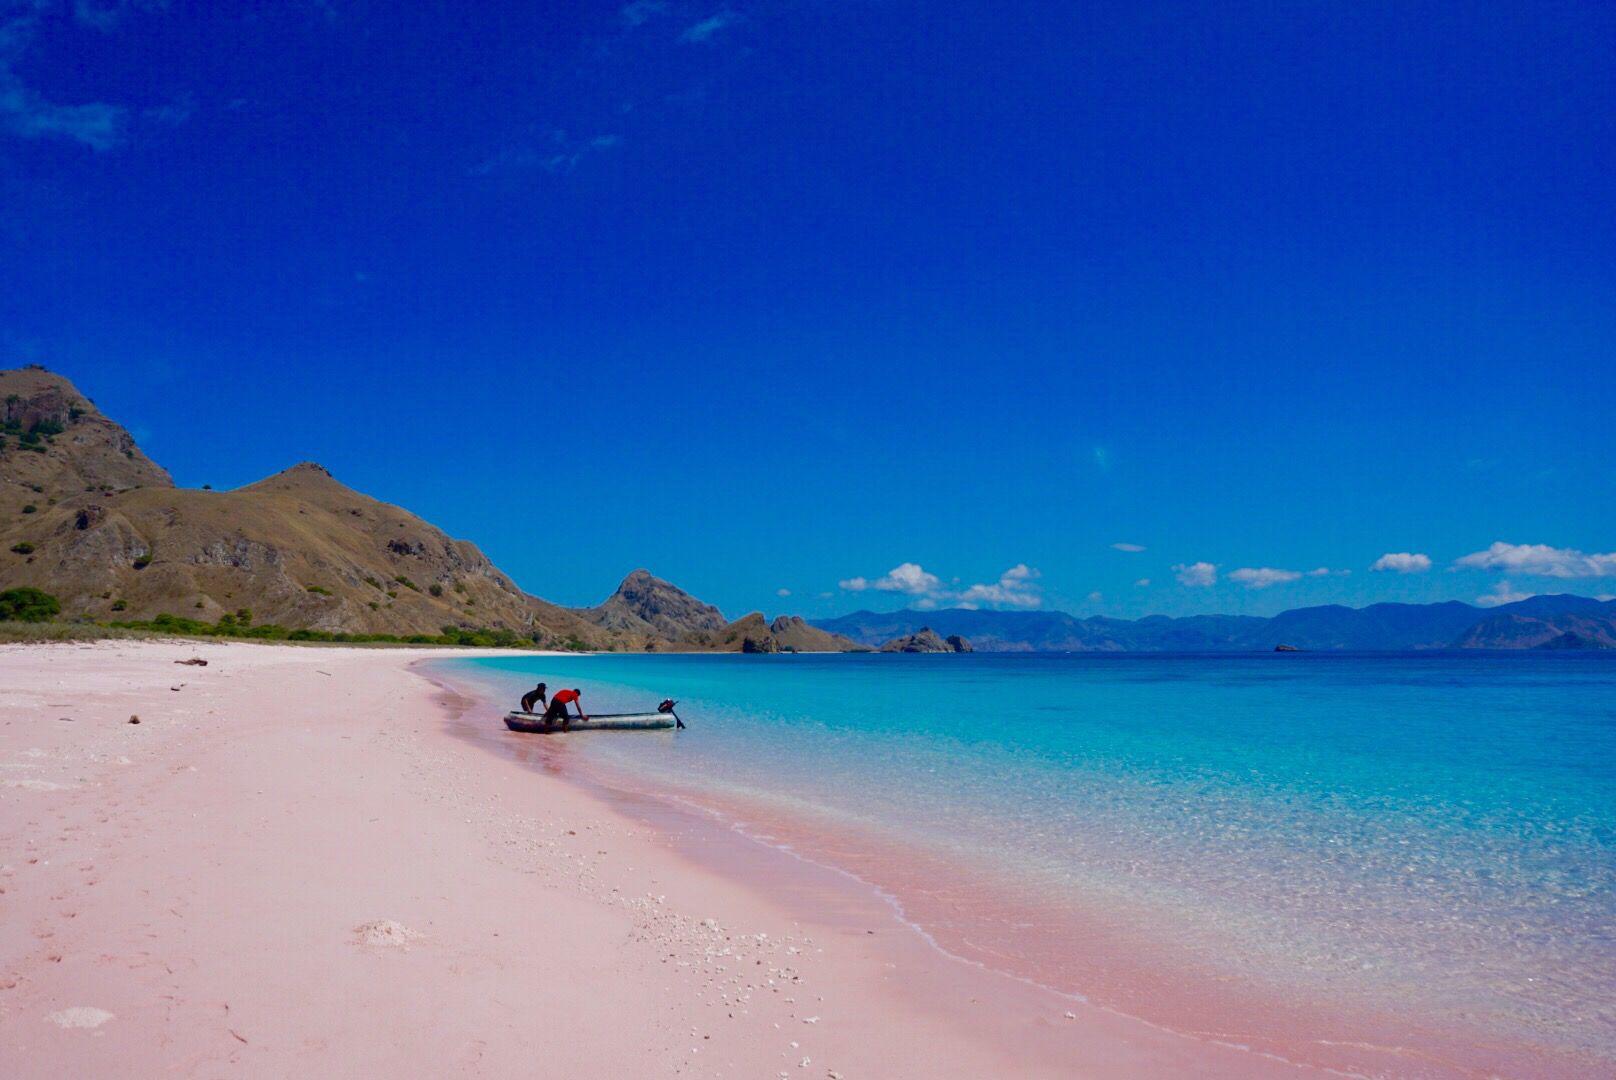 La Pink Beach dell’isola di Komodo, in Indonesia: a colorare la sabbia di rosa è il carbonato di calcio di piccoli invertebrati mescolato ai resti di coralli e conchiglie.